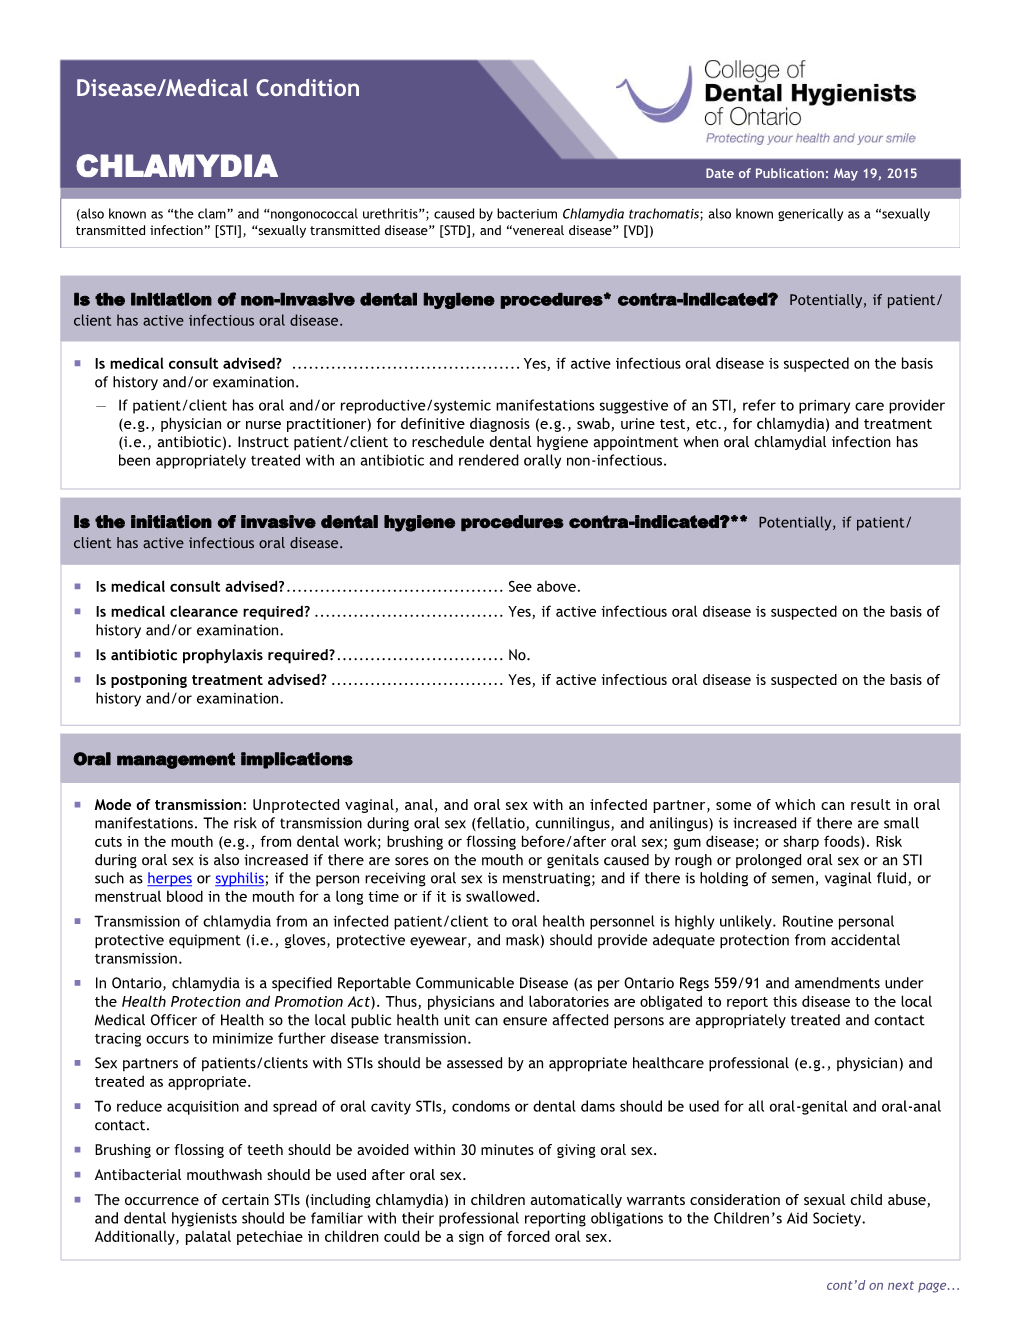 CDHO Factsheet Chlamydia